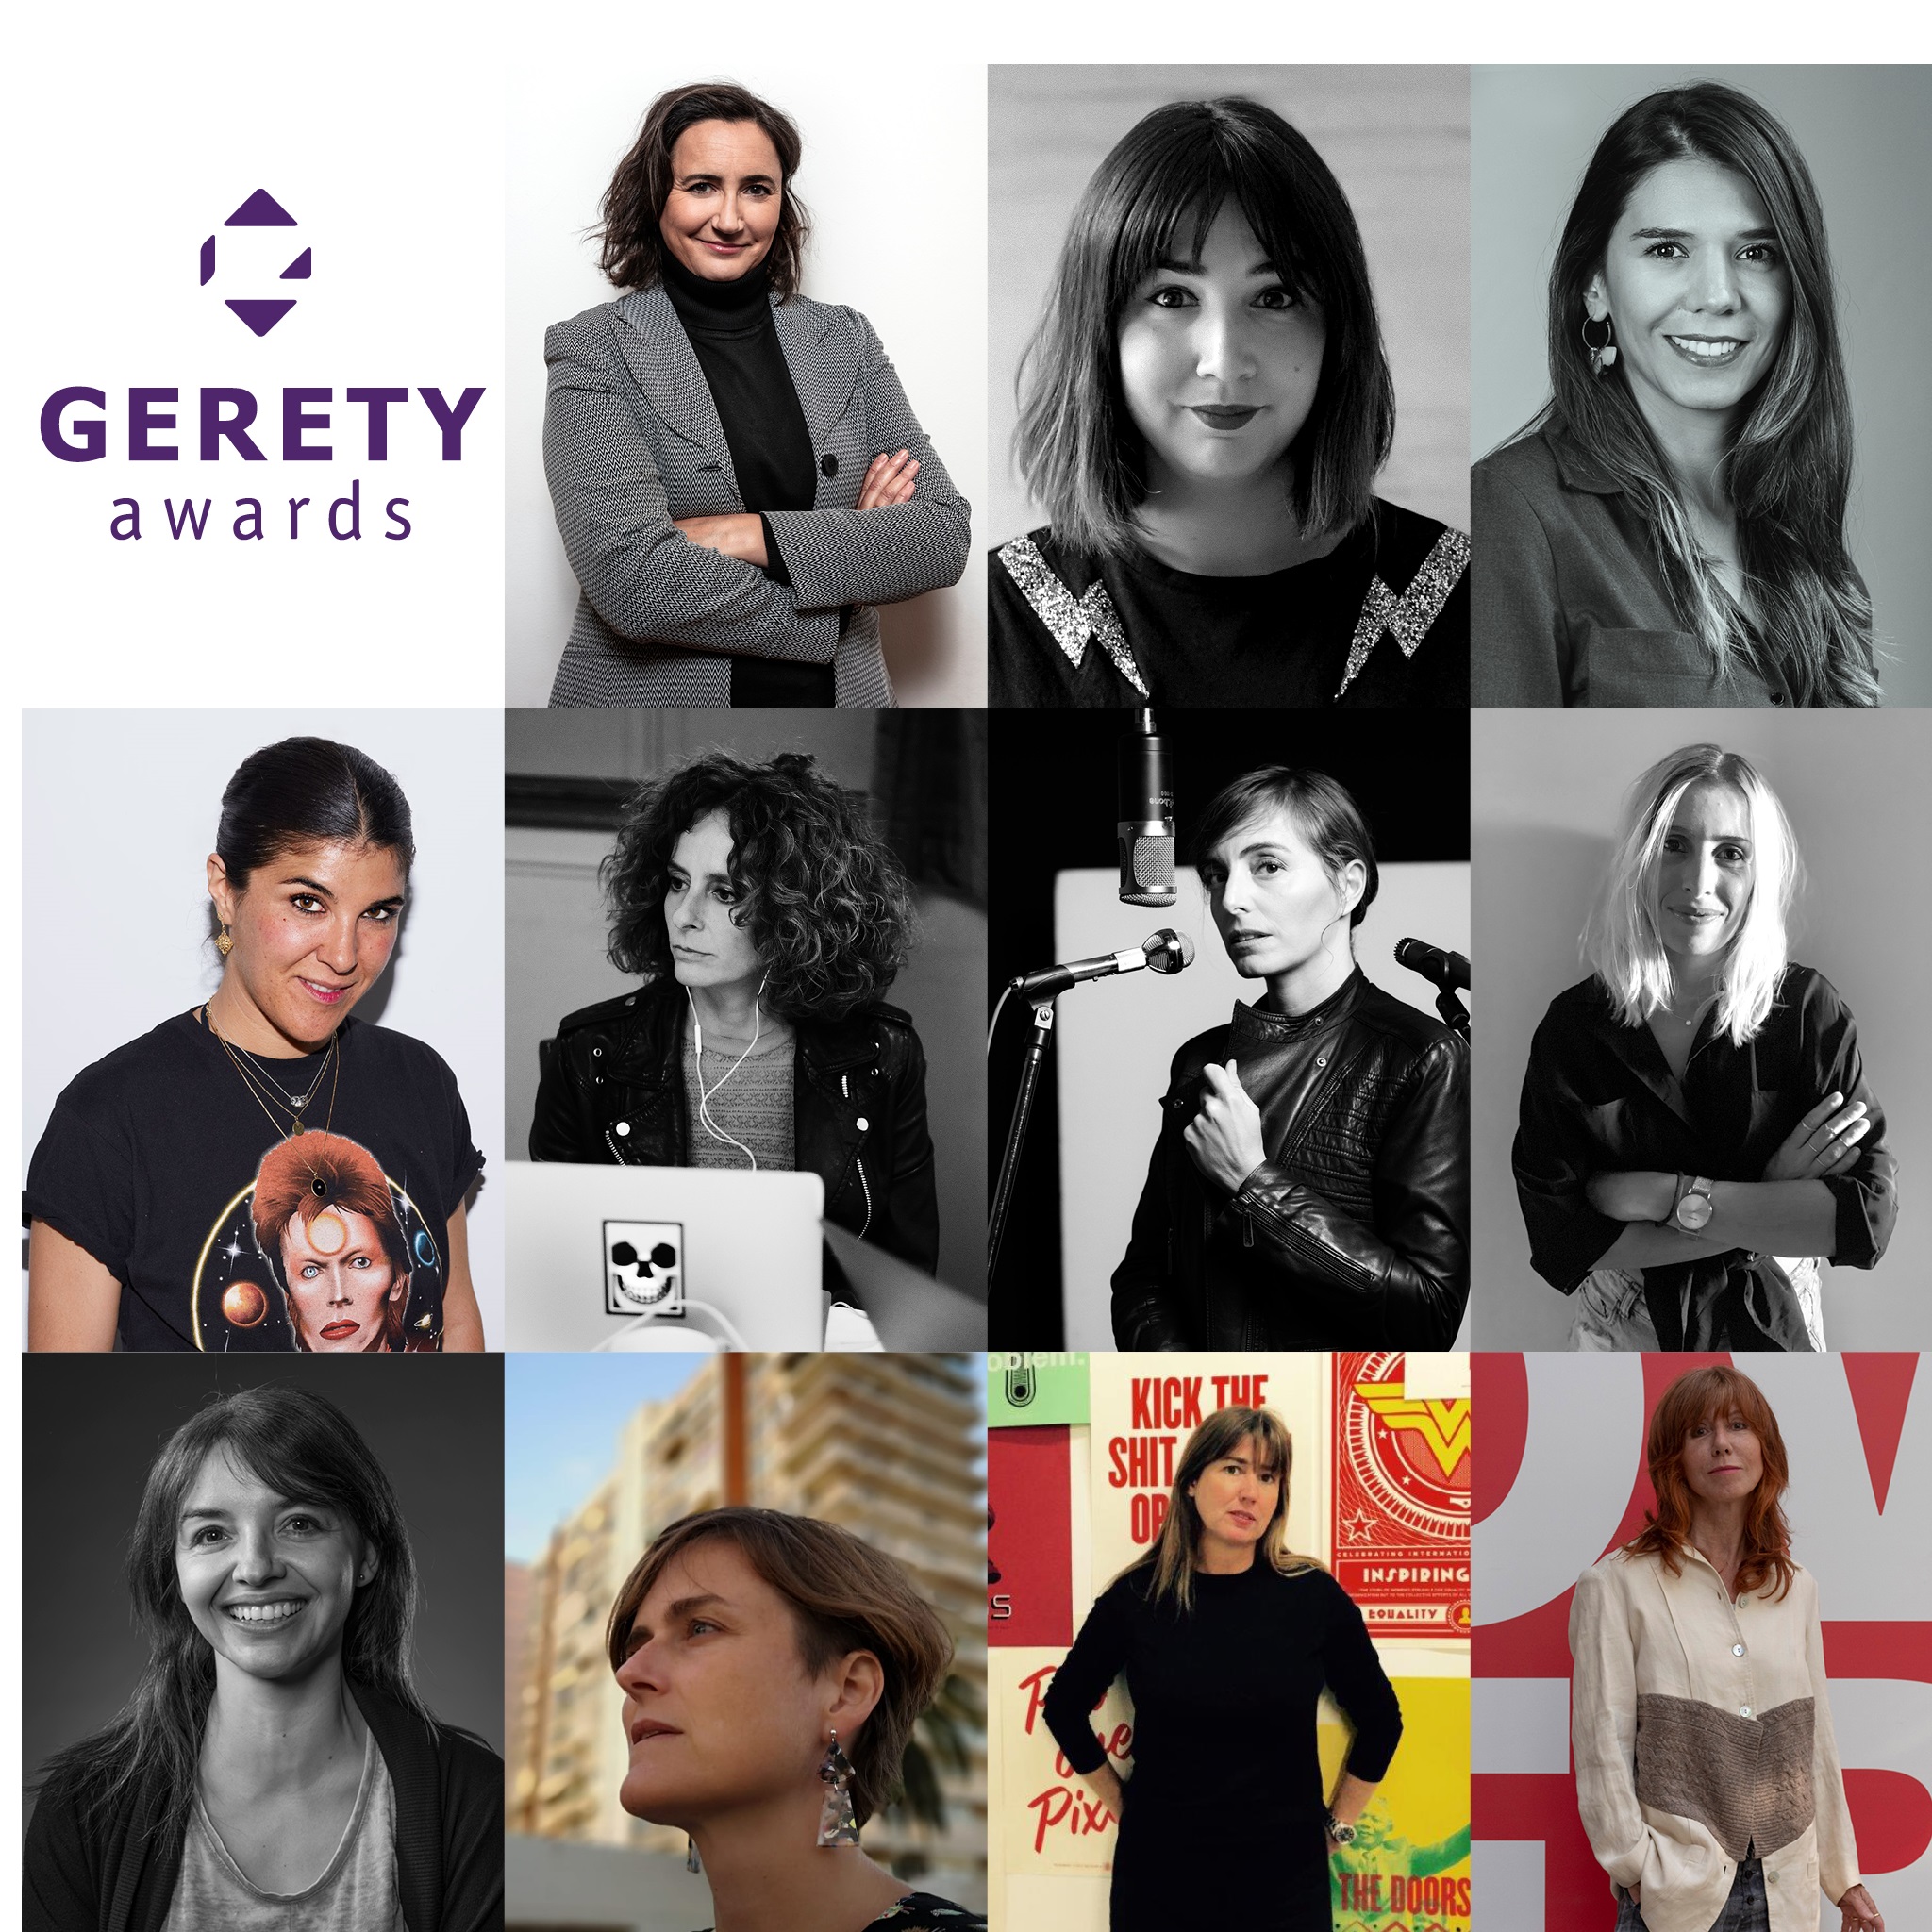 El jurado ejecutivo que se reunirá en Madrid forma parte del jurado de Gerety Awards con más de 170 líderes de agencias y marcas de 30 países